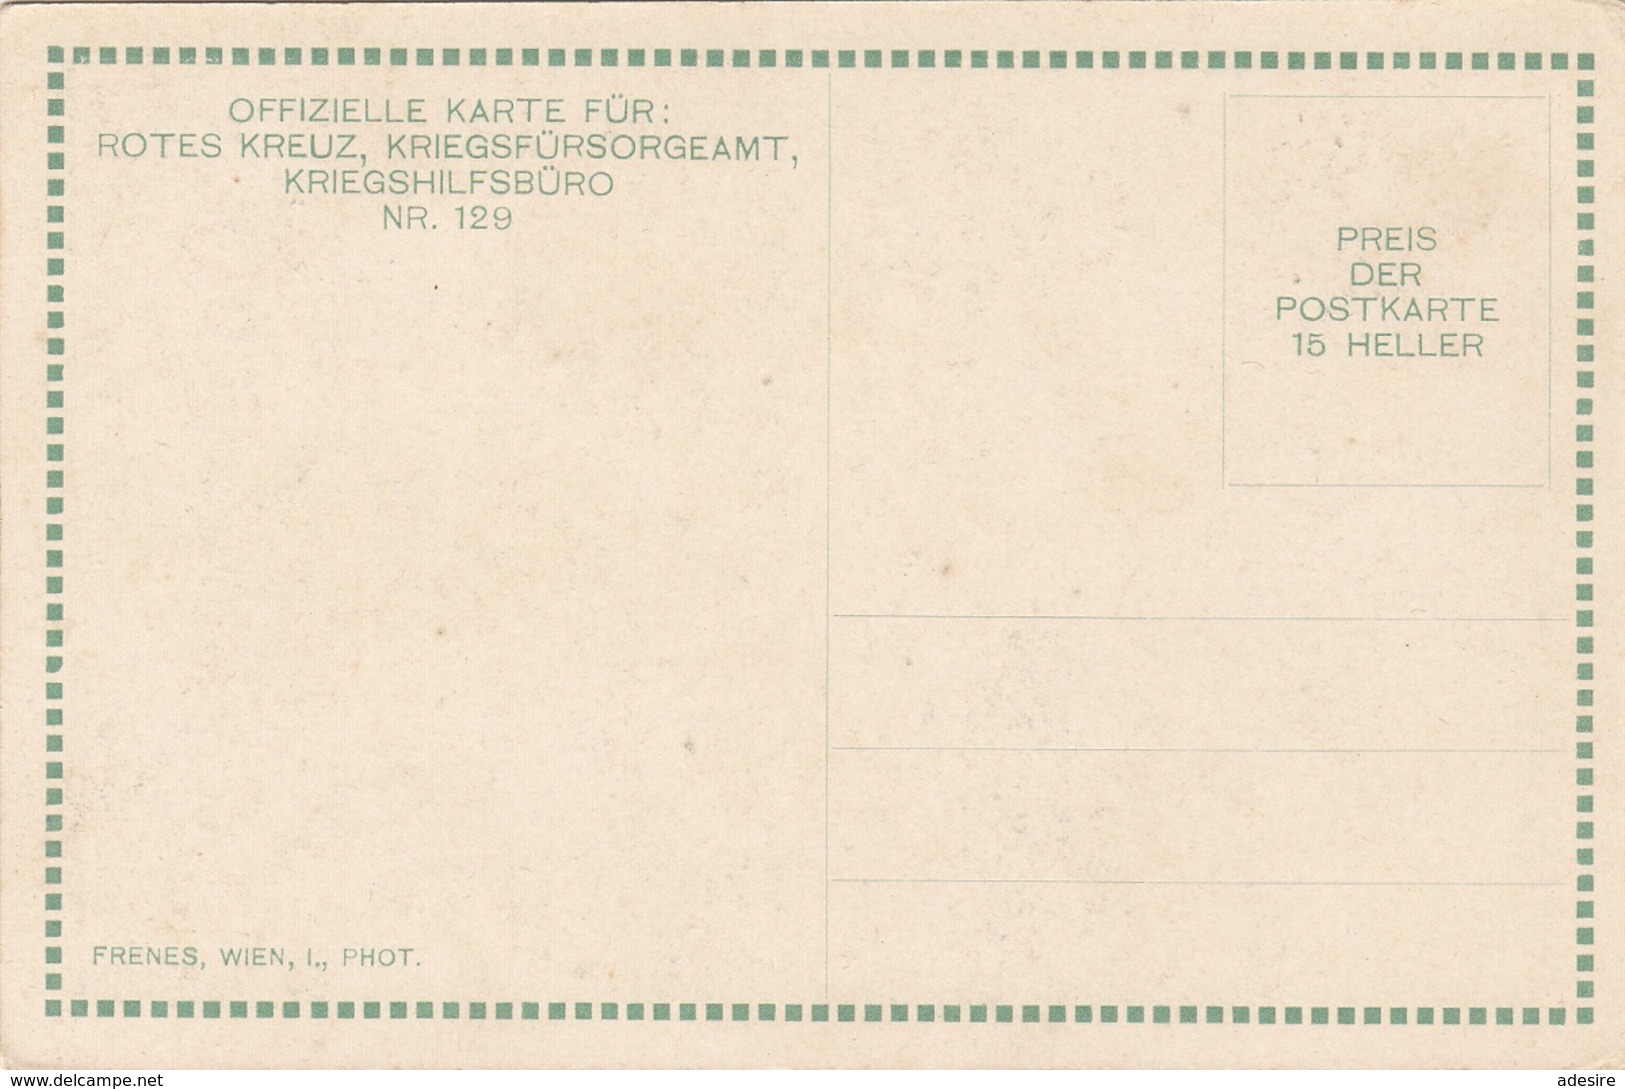 TIROLER KERNGESTALTEN - ROTES KREUZ KARTE NR.120 - Karte Um 1917, Gute Erhaltung - Rotes Kreuz